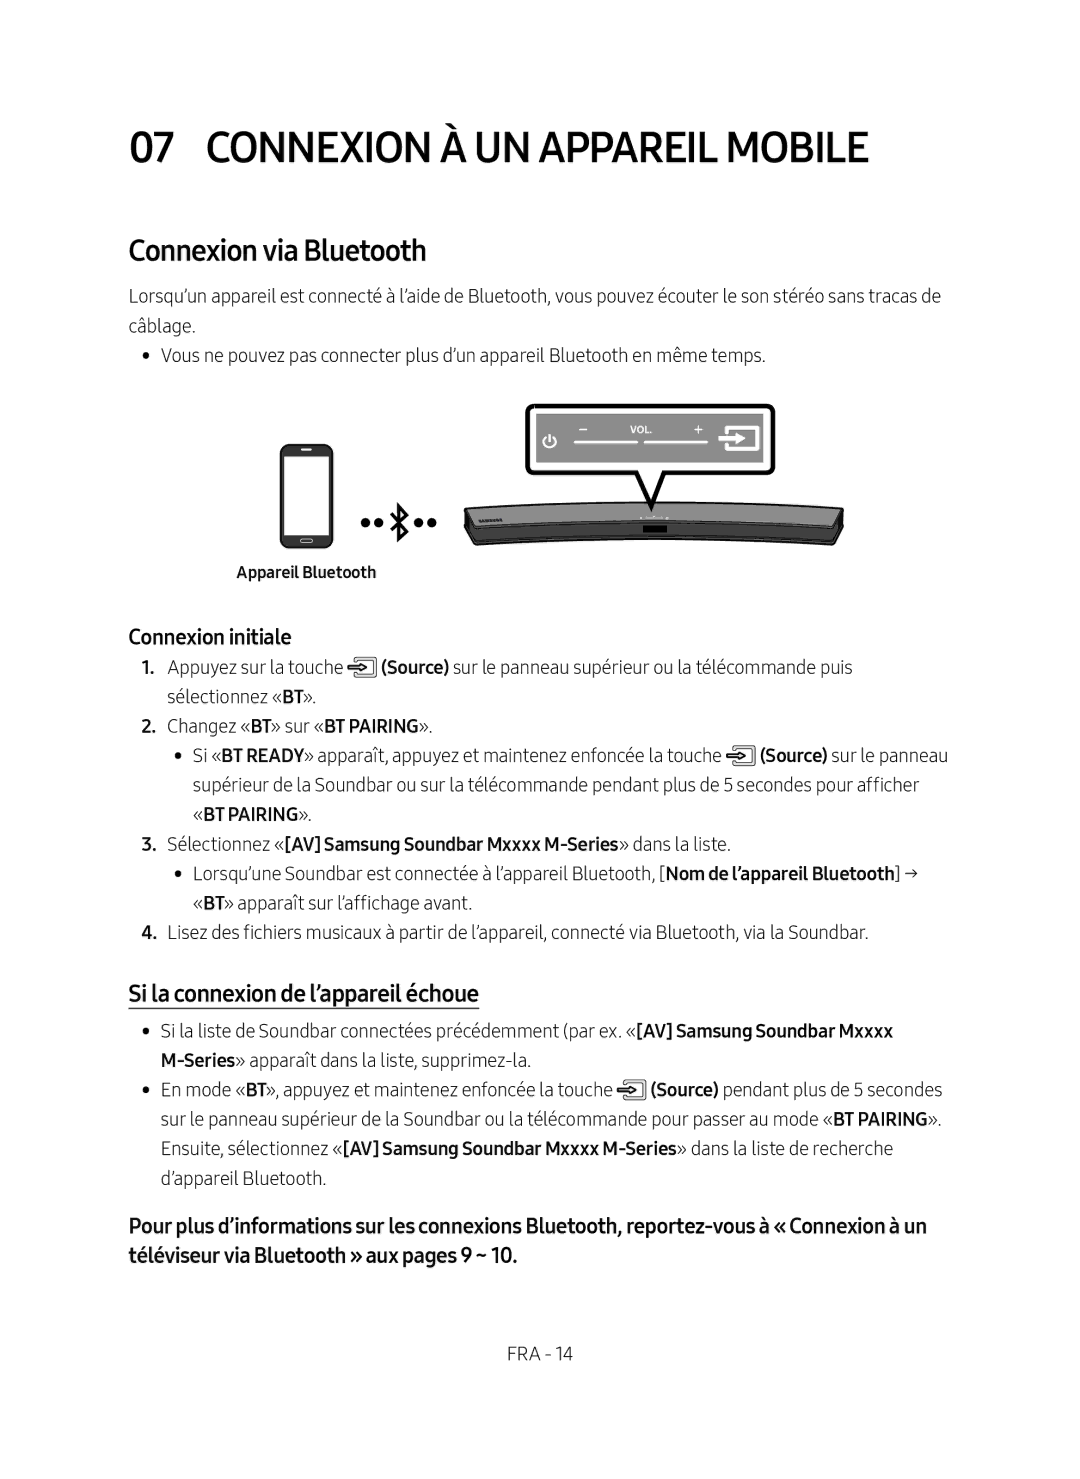 Samsung HW-M4500/EN manual Connexion à un Appareil Mobile, Connexion via Bluetooth, Si la connexion de l’appareil échoue 